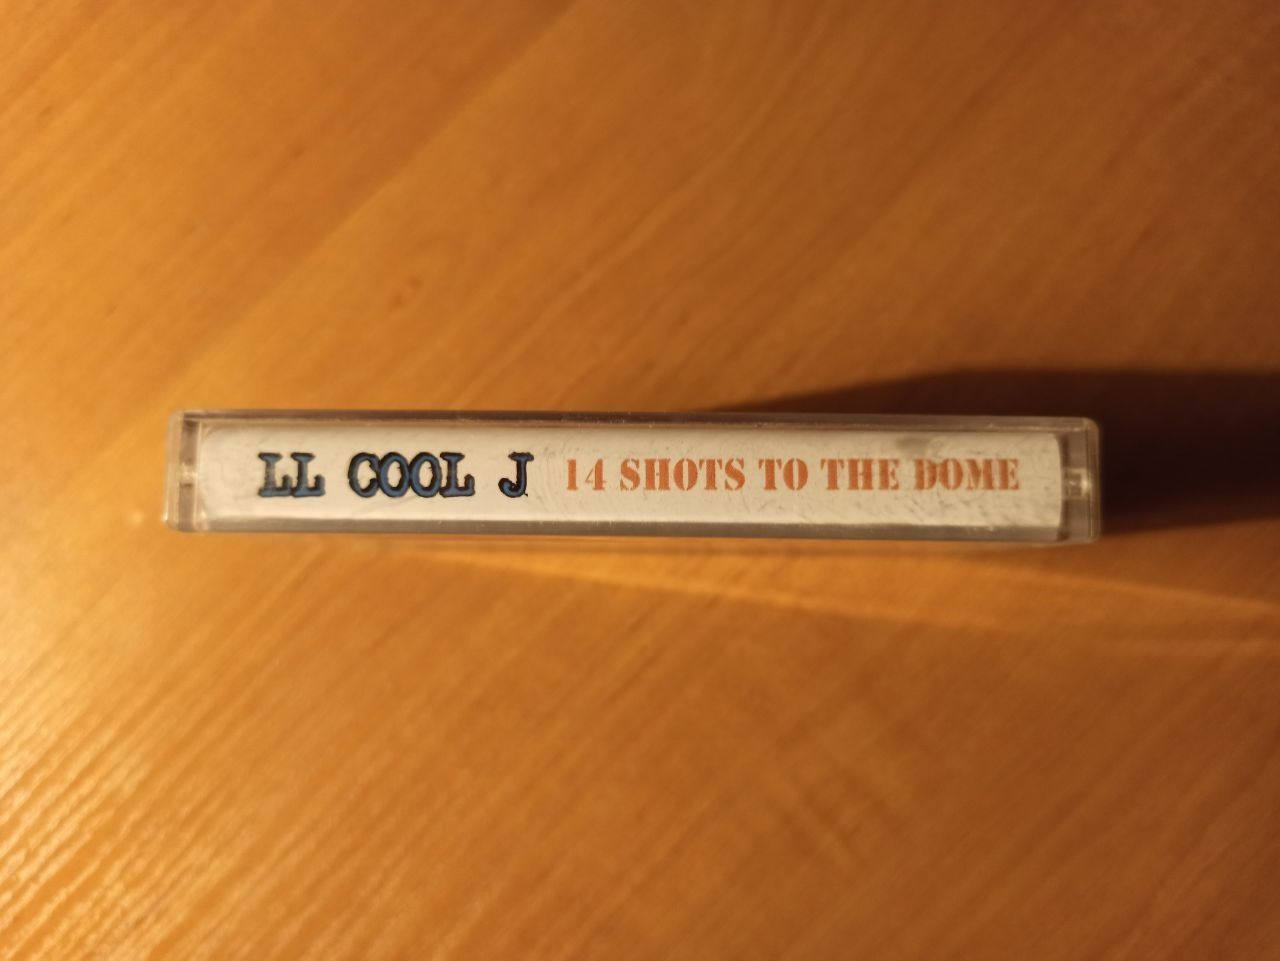 Кассета LL Cool J - 14 shots (рэп)